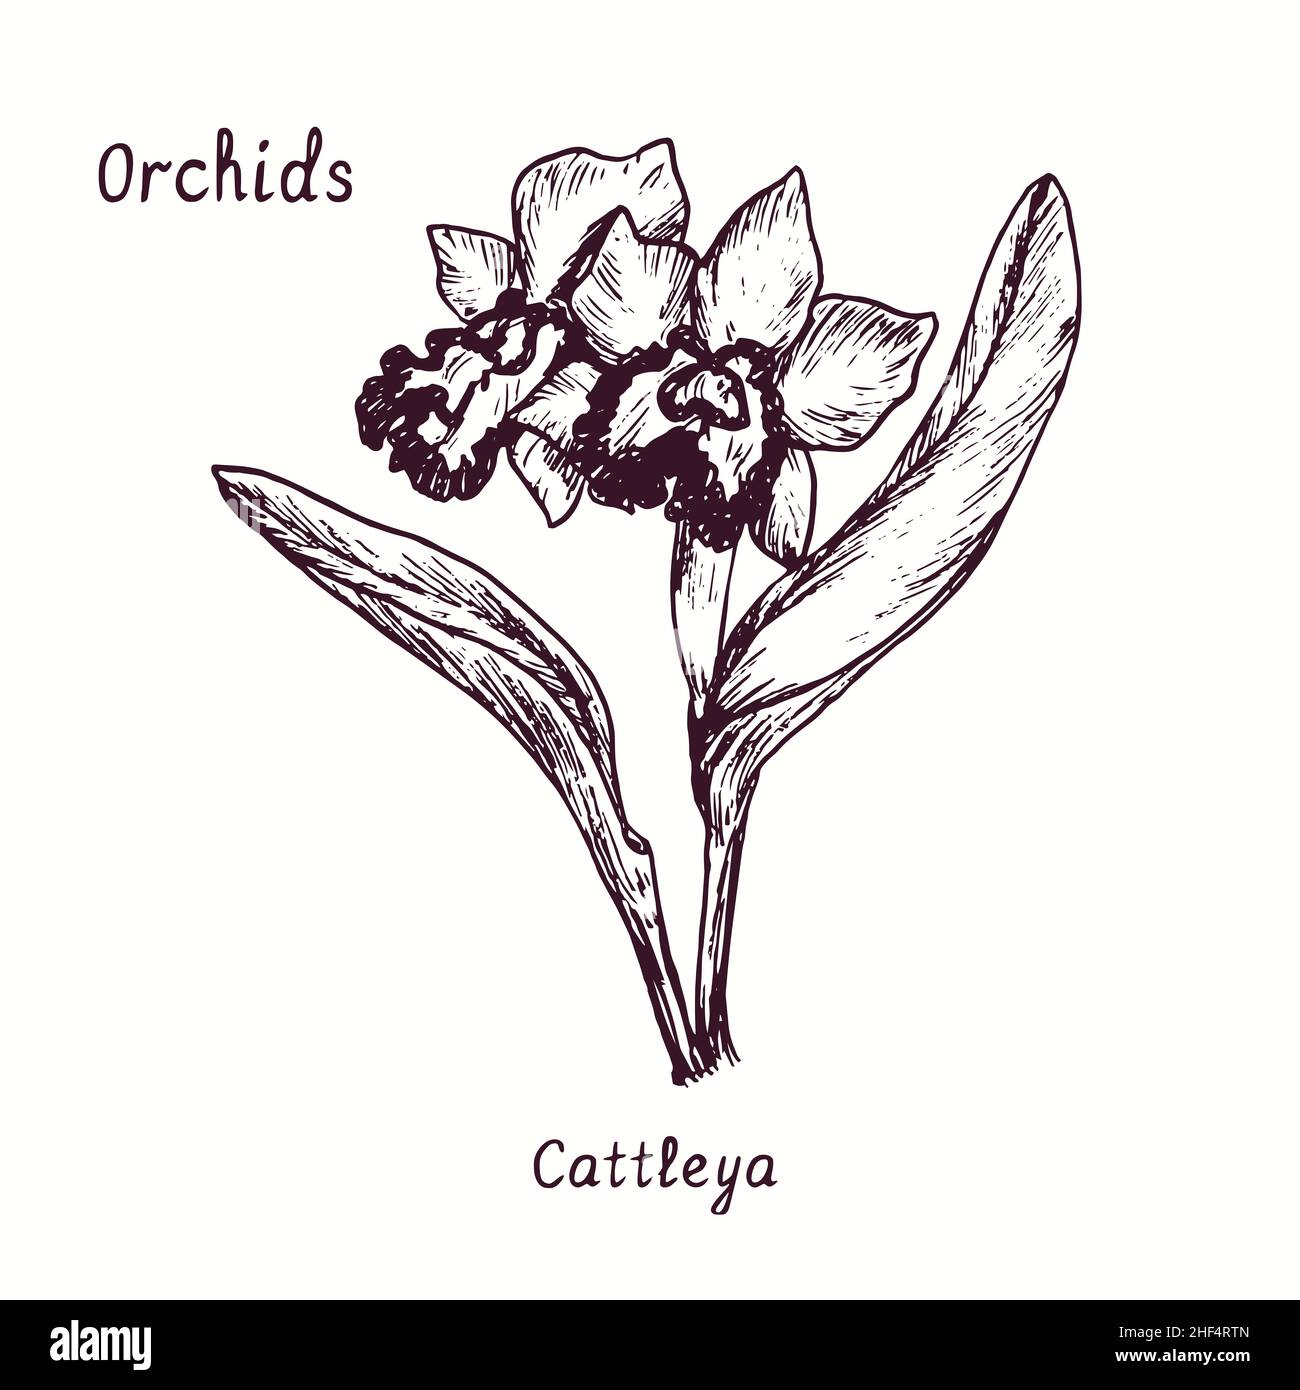 Collection de fleurs d'orchidées Cattleya.Dessin d'une boisée noire et blanche avec inscription. Banque D'Images